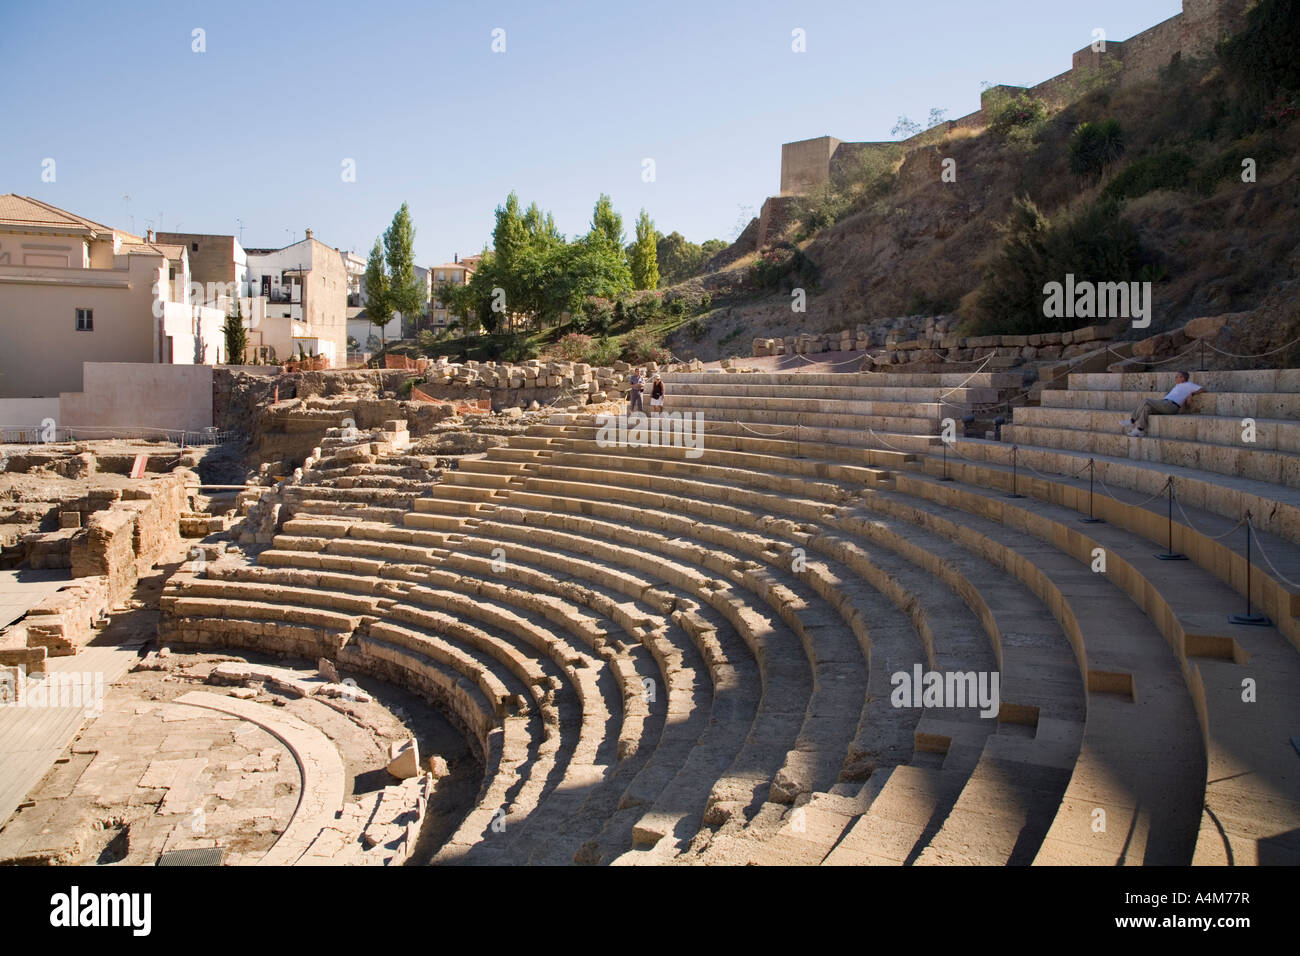 Malaga Costa del Sol Spain Ruins of the Roman theatre Stock Photo